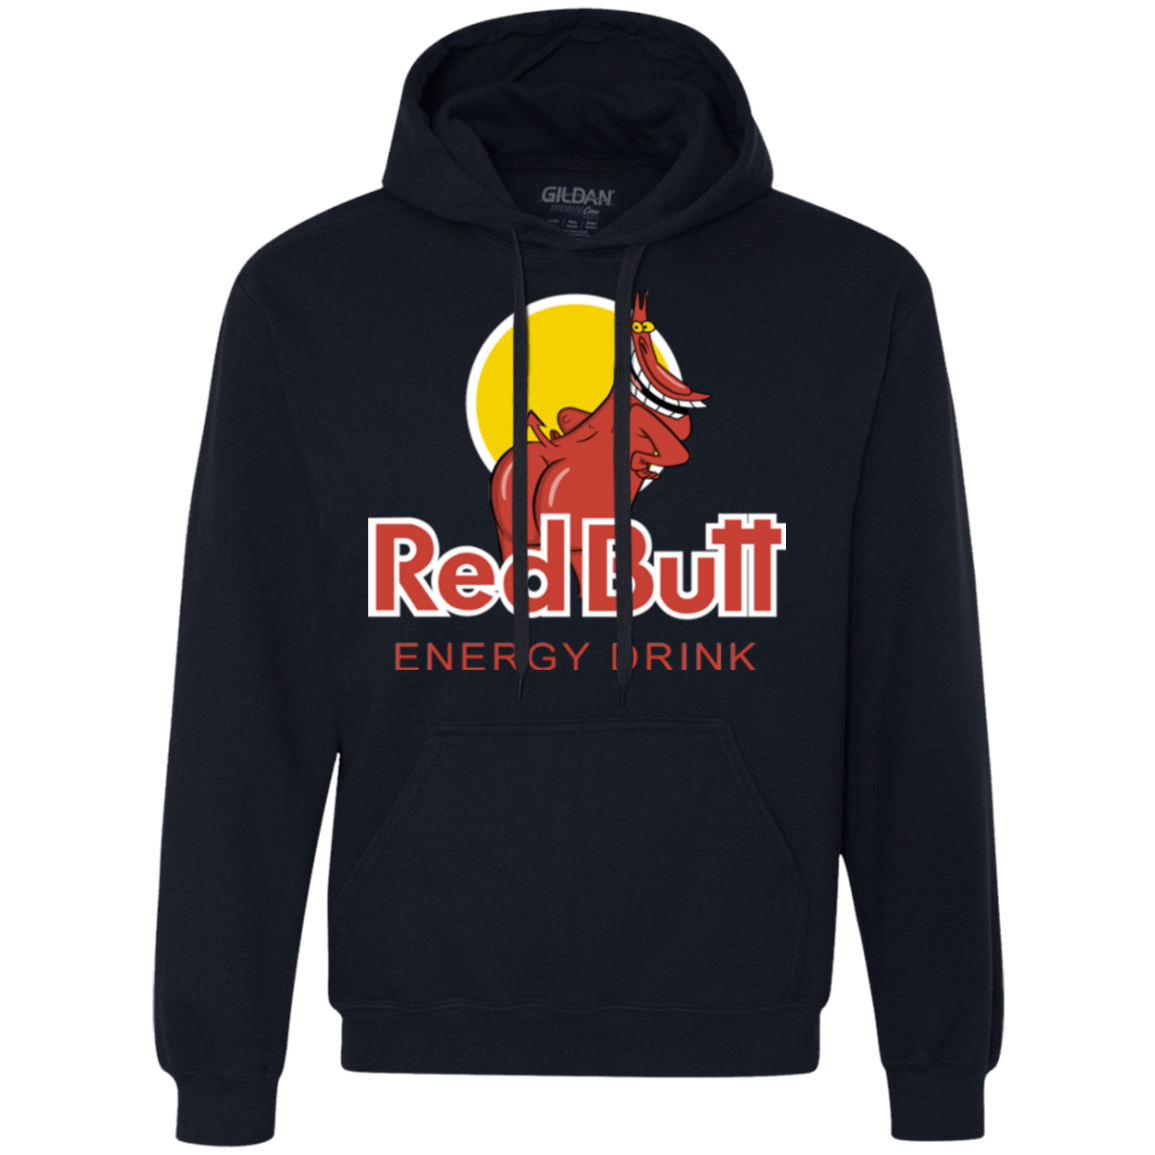 Sweatshirts Navy / Small Red butt Premium Fleece Hoodie